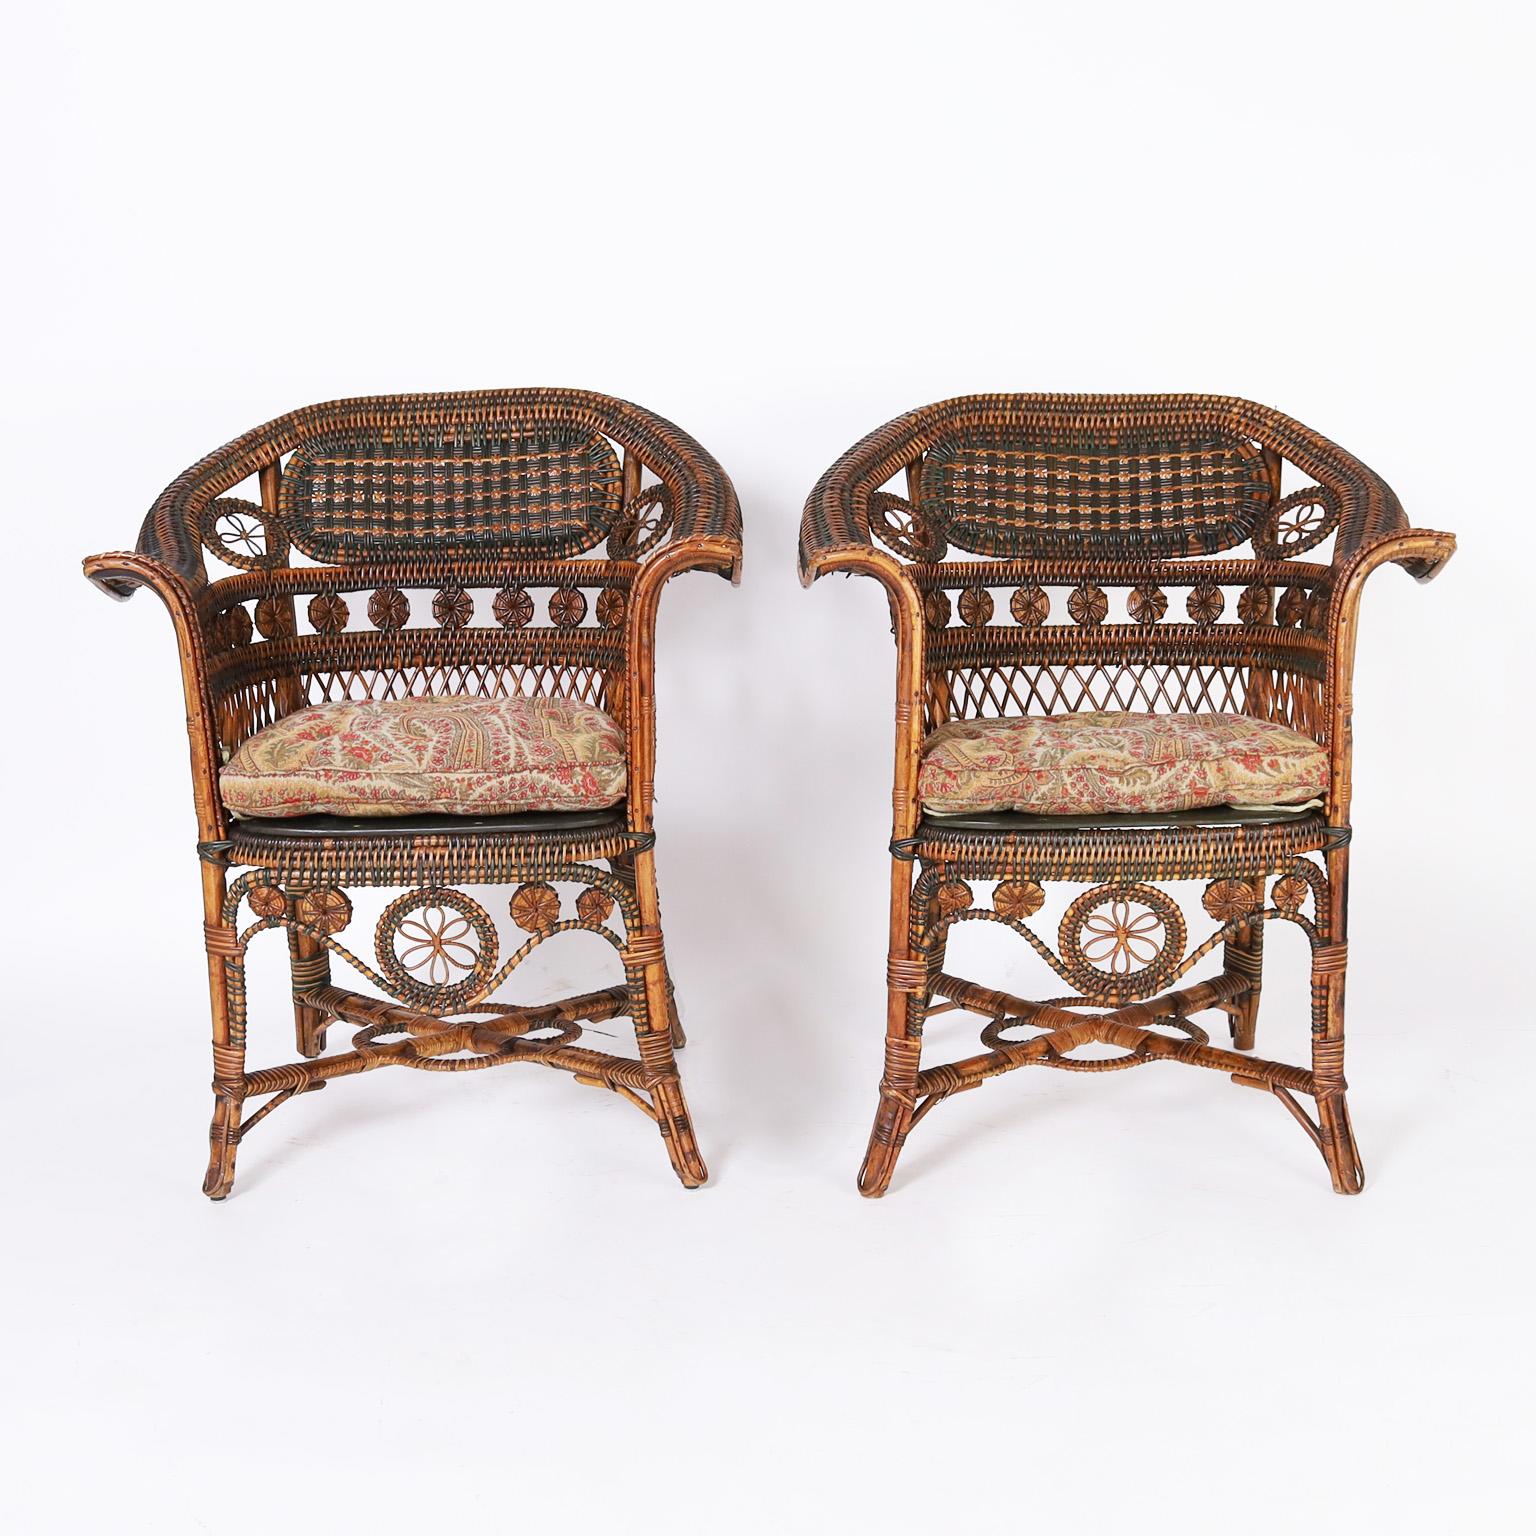 Impressionnante paire d'anciennes chaises de café françaises en rotin et roseau avec des cadres en bois courbé décorés de rotin peint et enveloppé de roseau naturel dans une forme gracieuse avec de solides traverses. Signé Pierre Leroux.